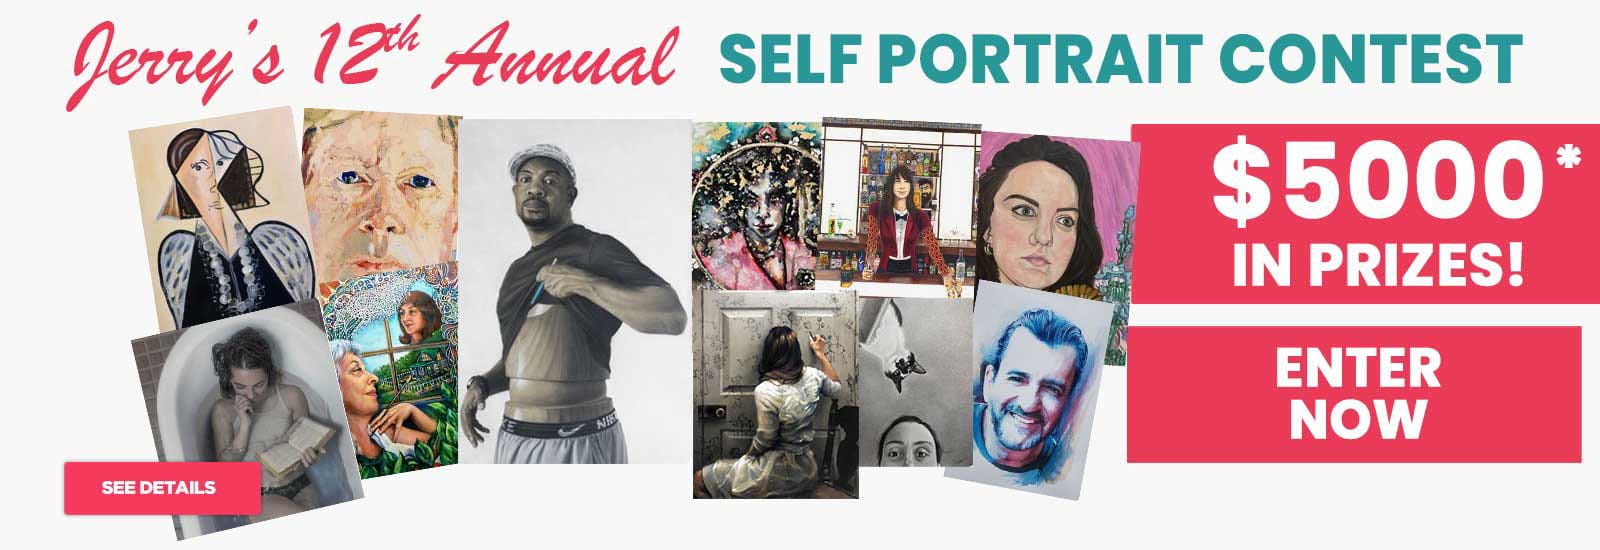 12th Annual Self Portrait Contest